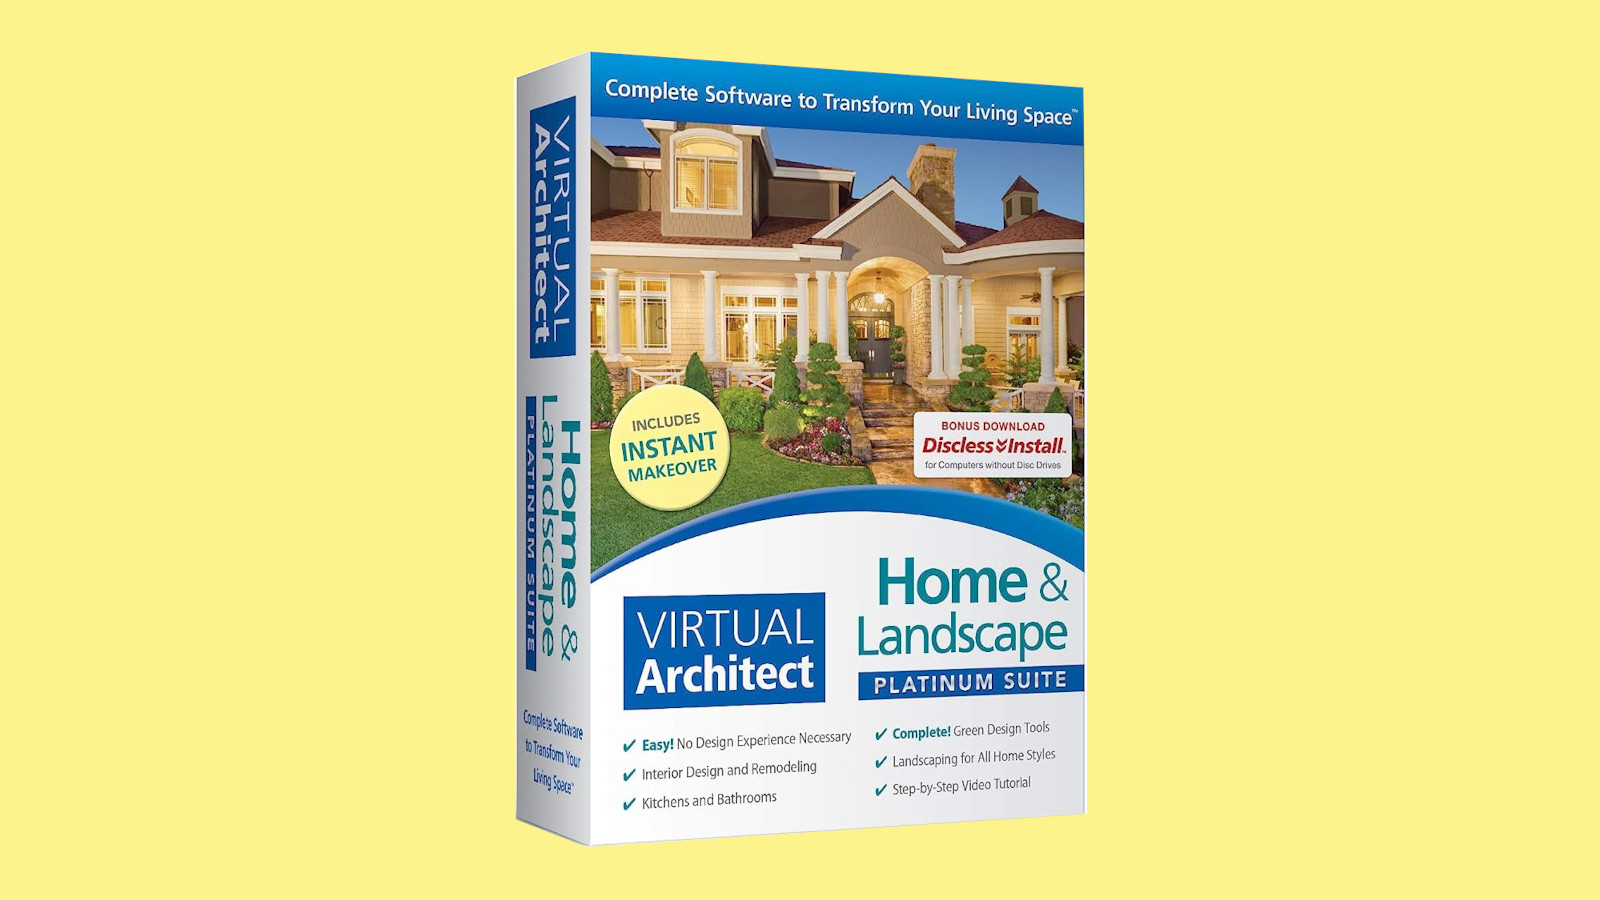 Virtual Architect Home & Landscape Platinum Suite CD Key, $103.45